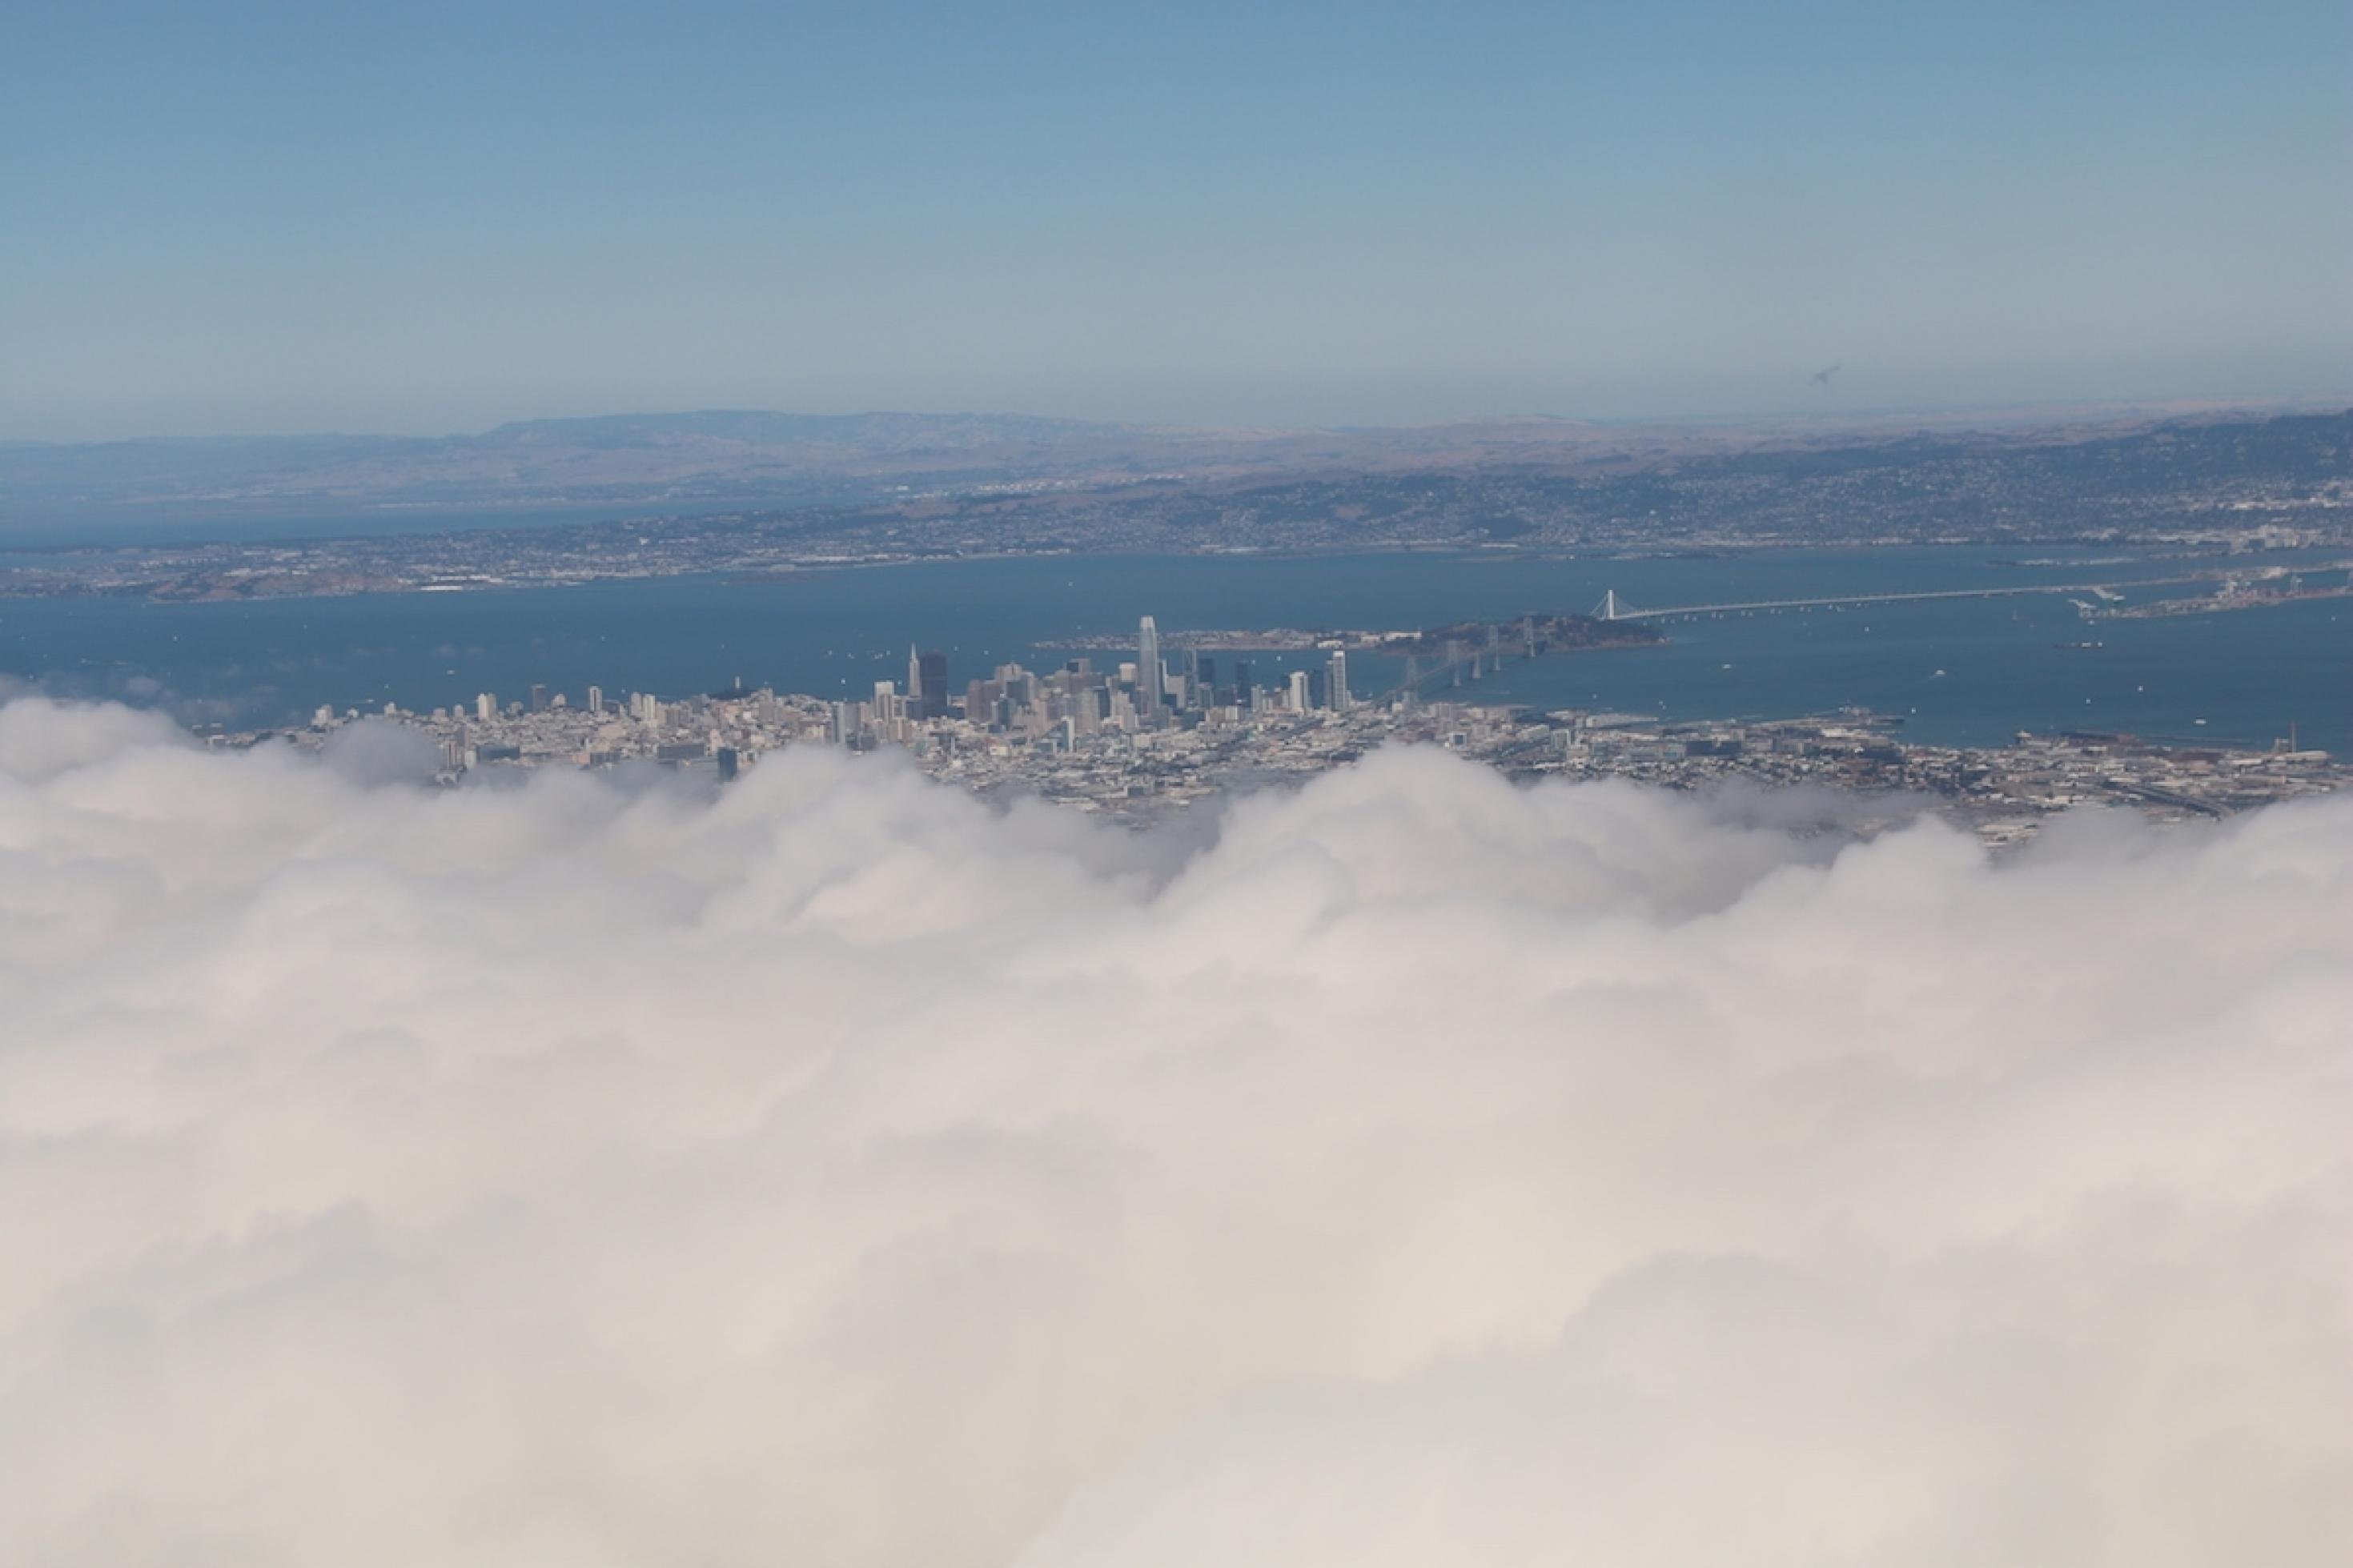 Blick aus dem Flugzeug-Fenster. Durch eine Wolkenlücke erkennt man die Innenstadt von San Francisco Oakland-Bay-Brücke. 
Abschied von San Francisco mit Blick auf die Skyline und die Oakland-Bay-Bridge. Bleiben die Versprechen, die in der Stadt abgegeben wurden, nur wolkige Worte?